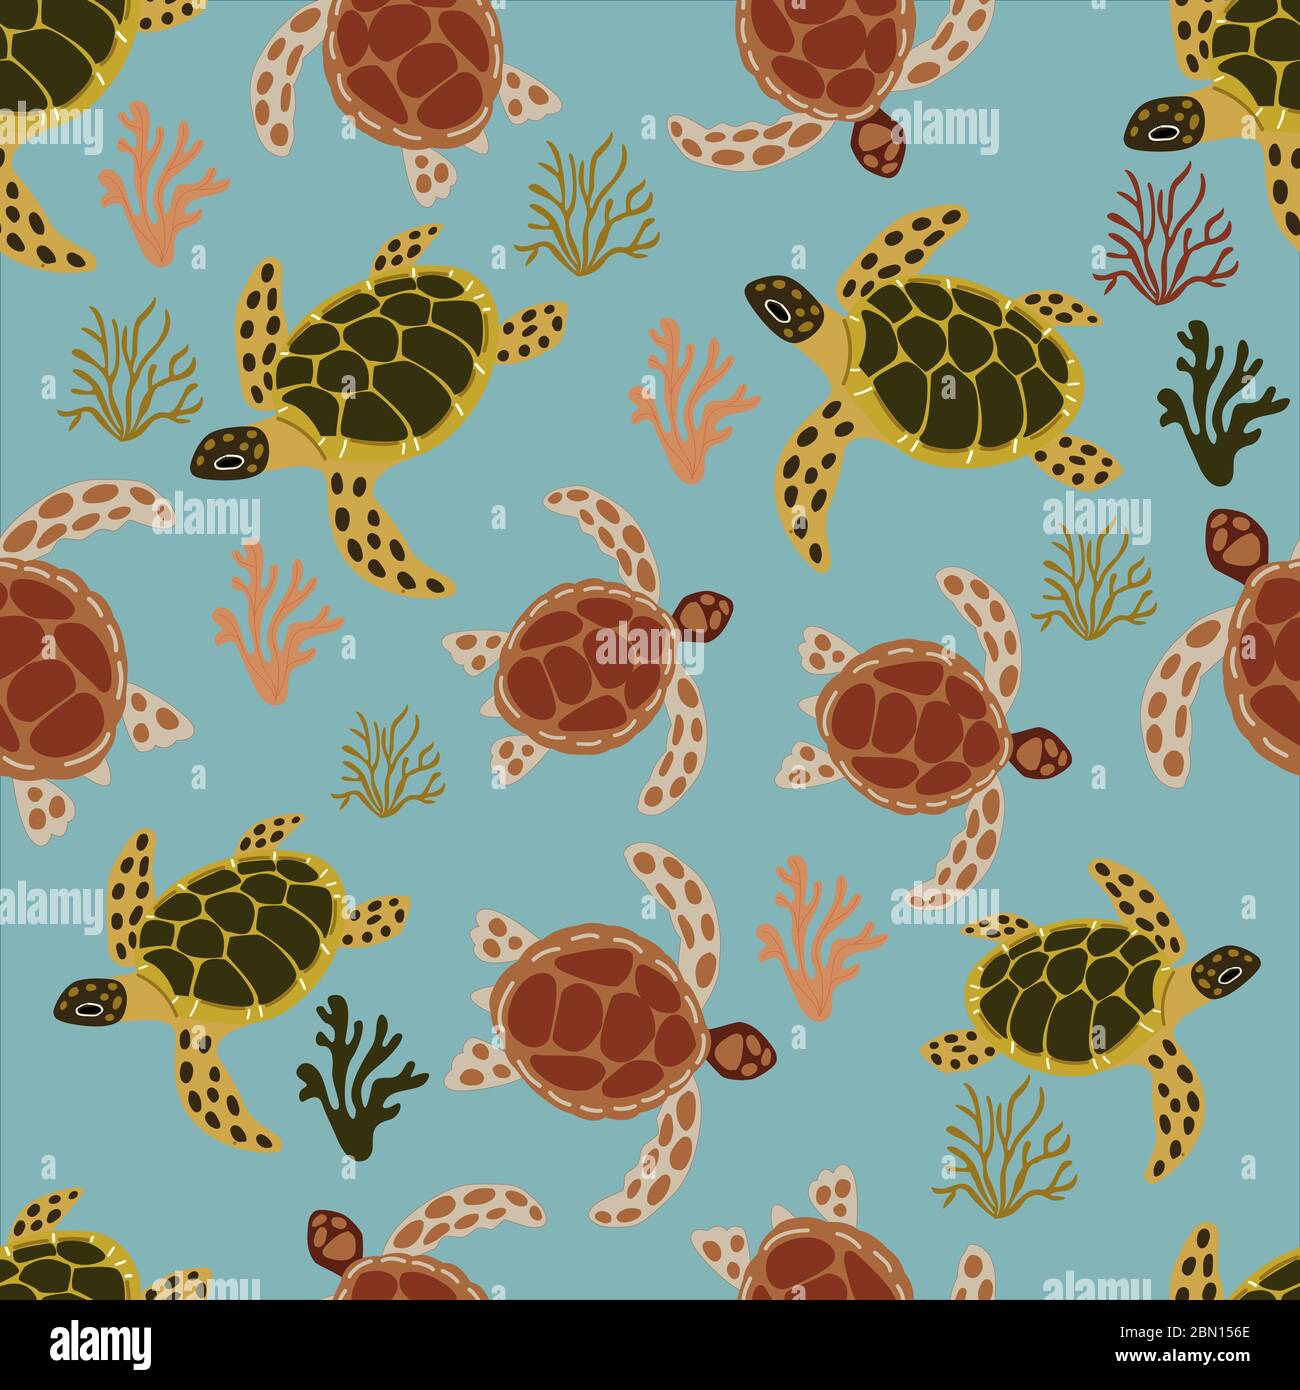 Disegno senza cuciture con tartarughe e coralli marini, su sfondo blu, in stile cartoon. Per la progettazione di tessuti, carta da imballaggio, stampe per copertine di Illustrazione Vettoriale